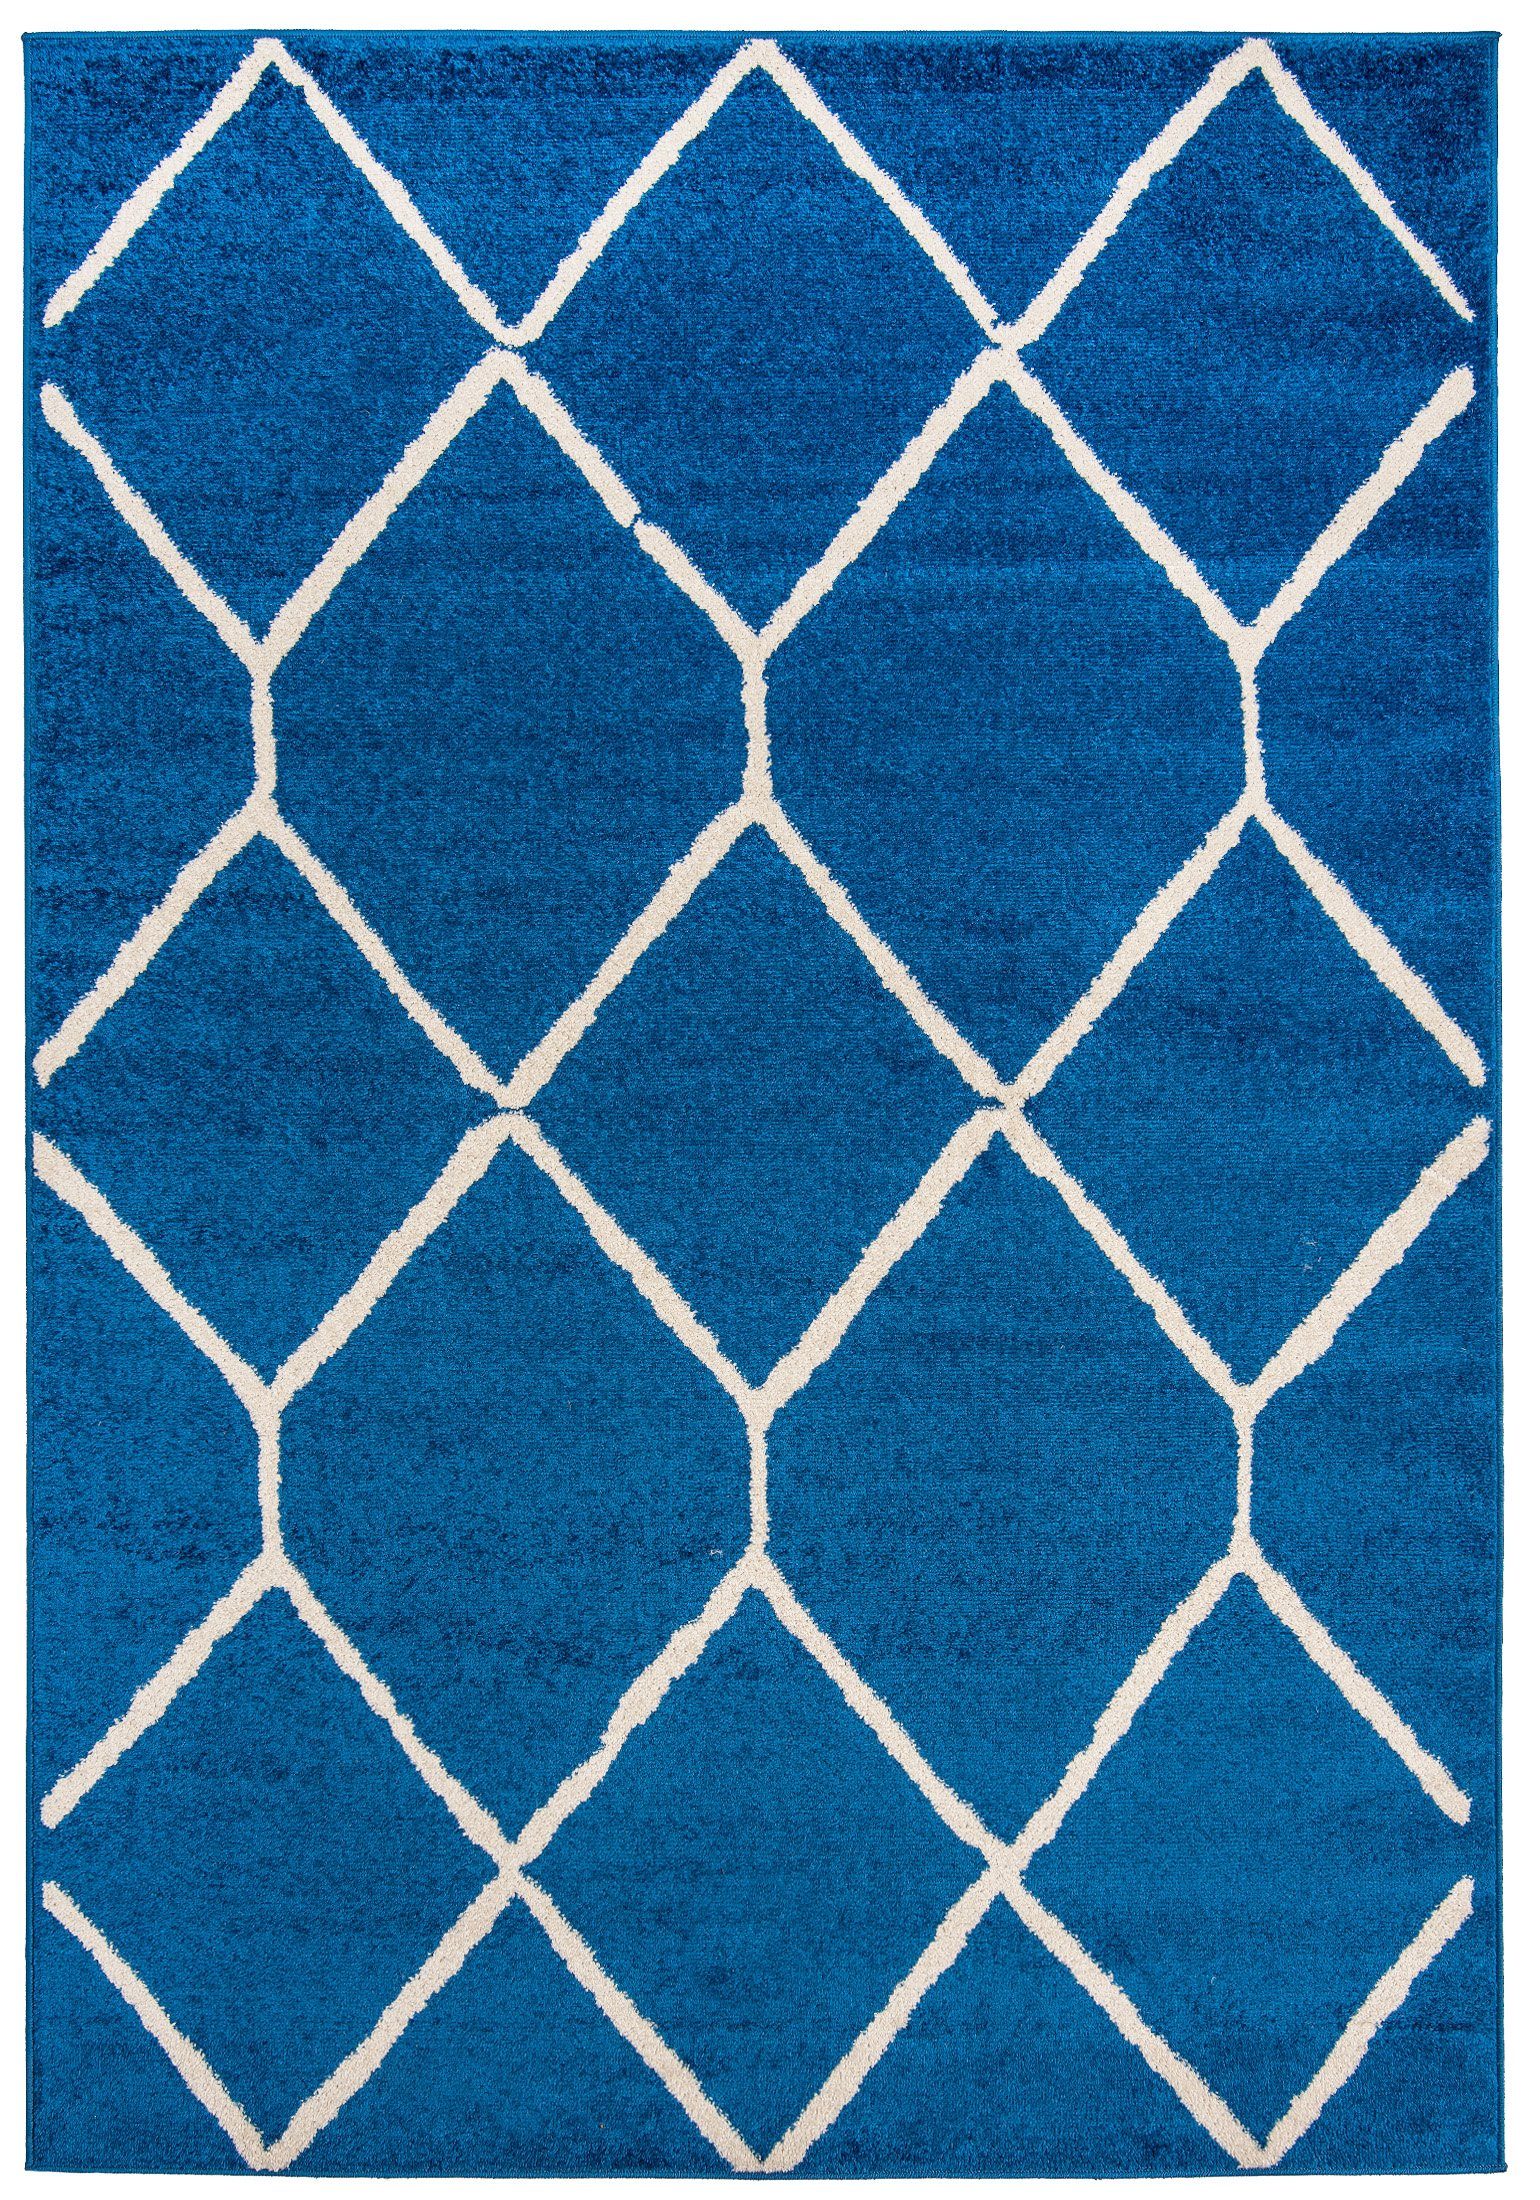 Designteppich Modern Teppich Geometrisch Muster Blau farbe - Kurzflor, Mazovia, 80 x 150 cm, Geeignet für Fußbodenheizung, Höhe 7 mm, Kurzflor